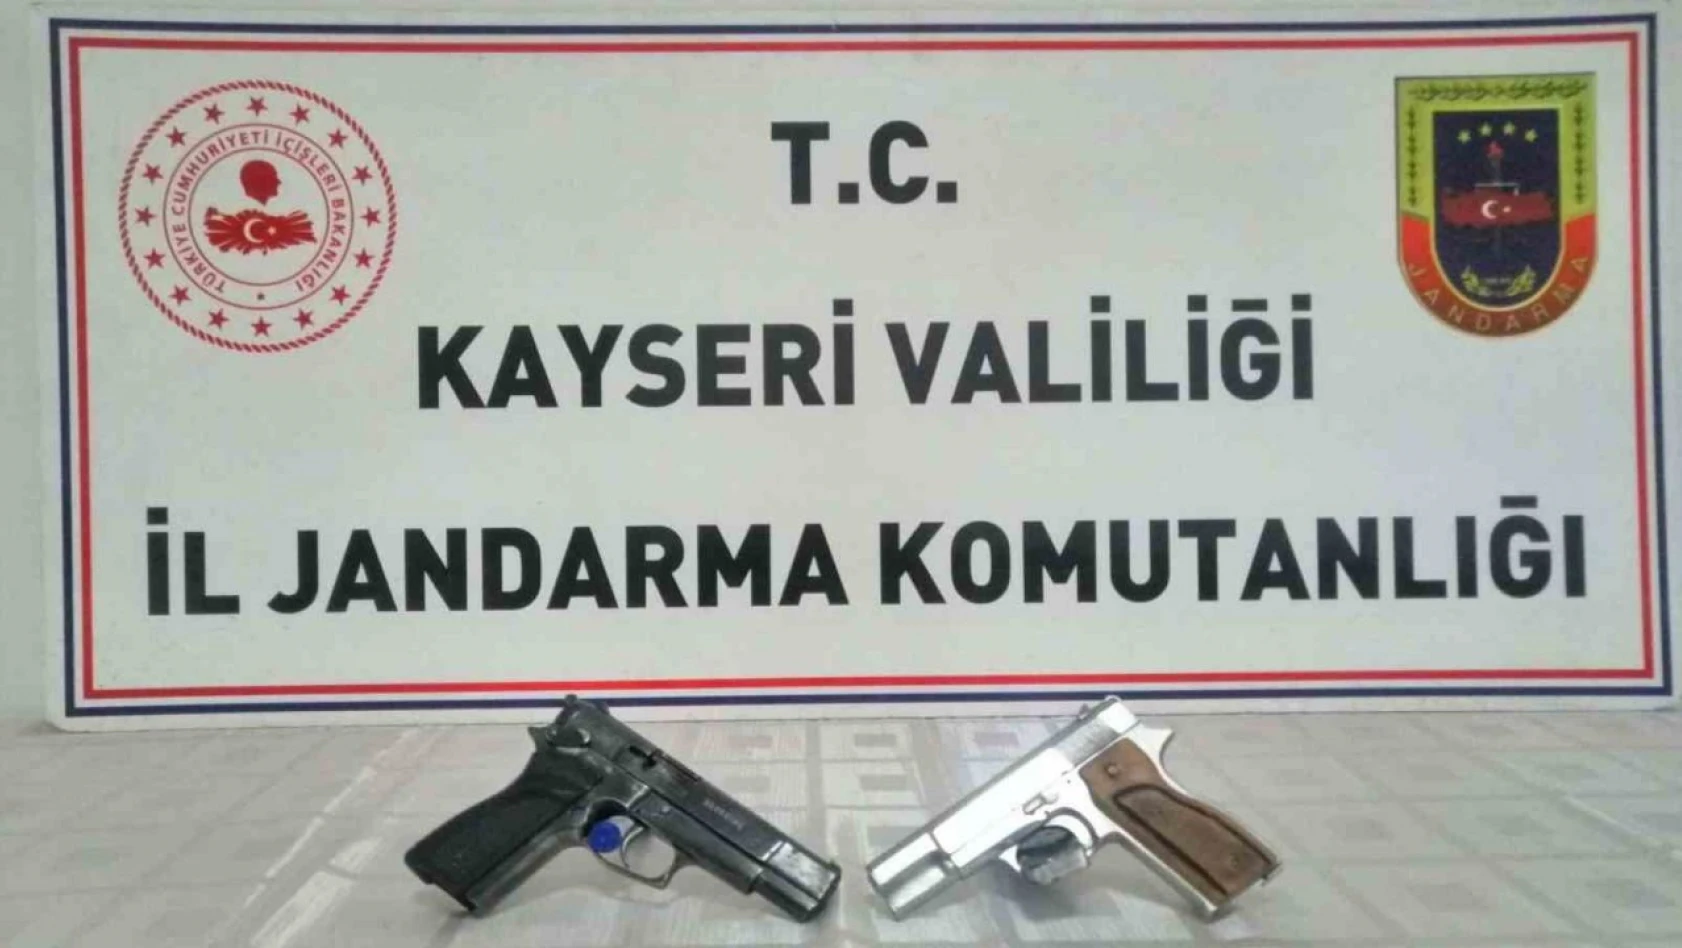 Kayseri'de Jandarma 2 adet ruhsatsız tabanca ele geçirdi